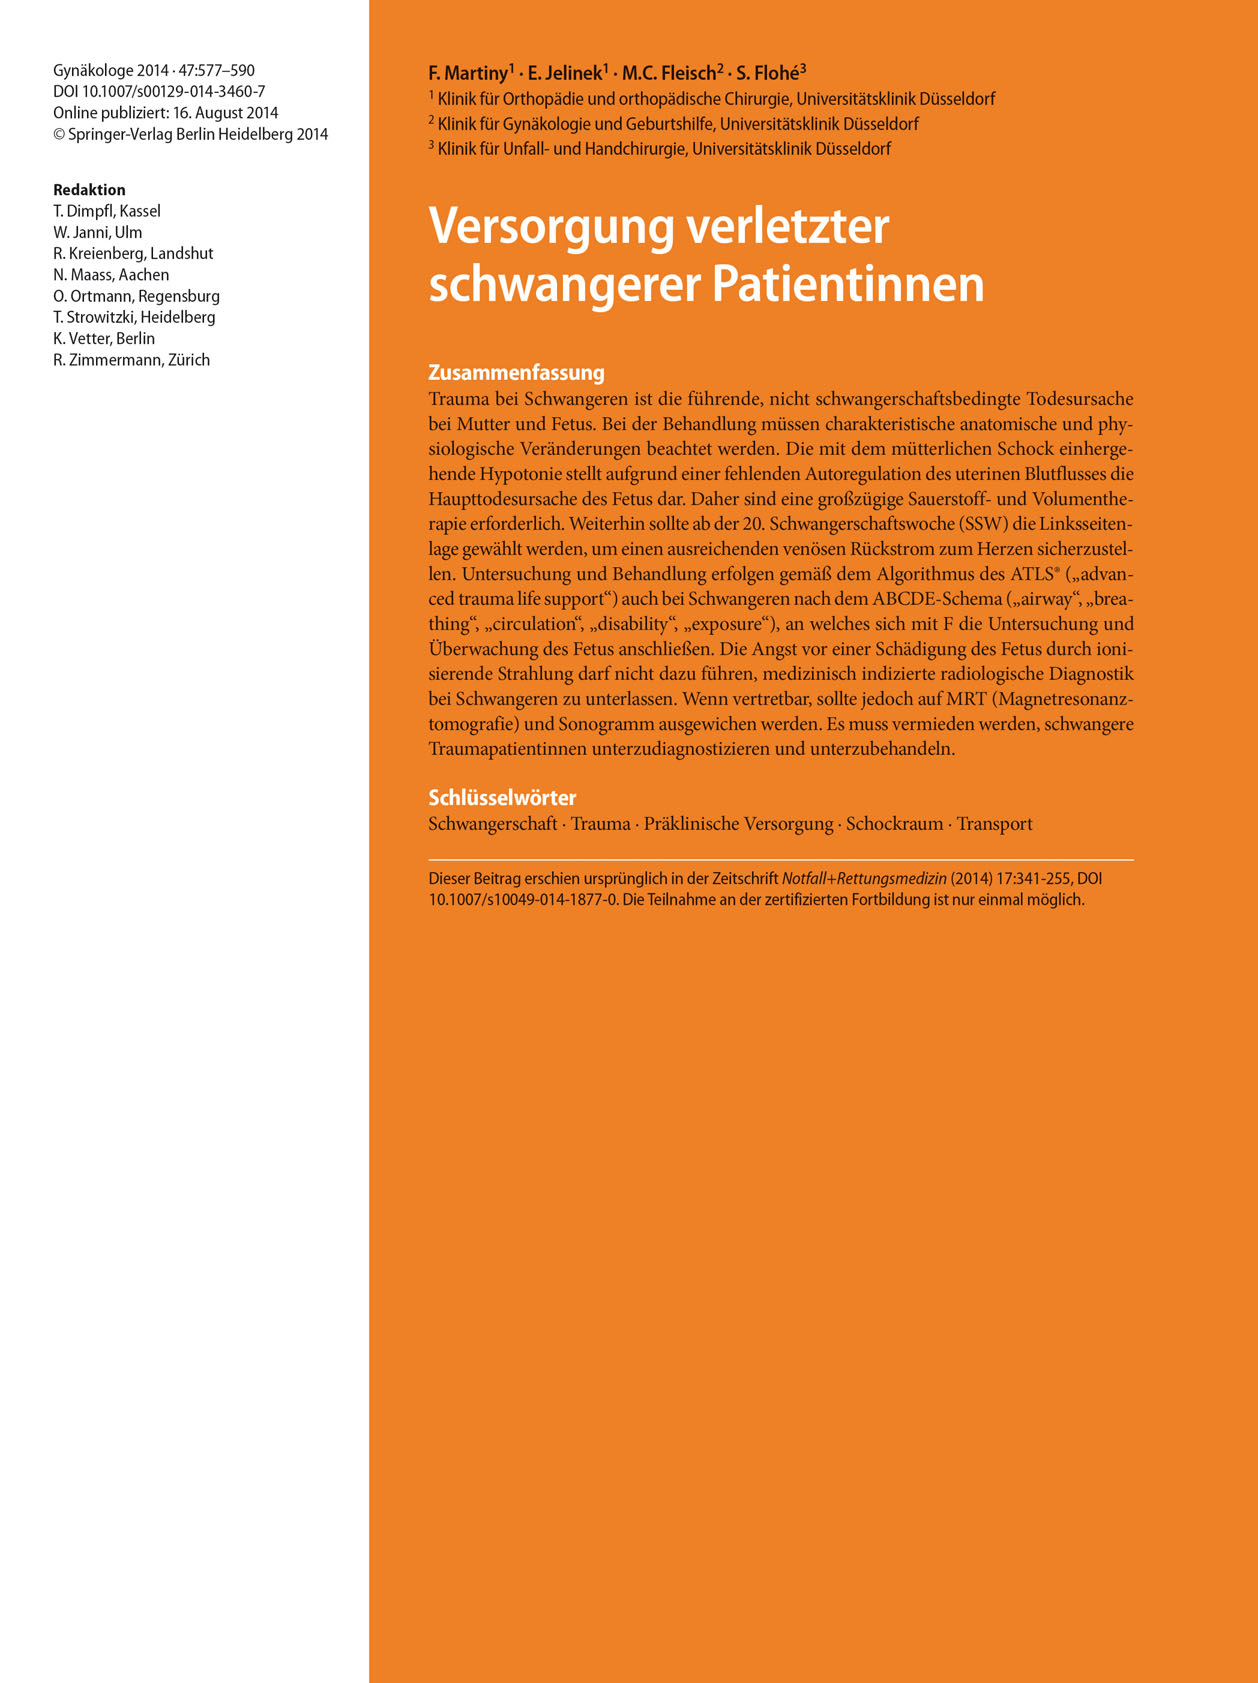 T. Dimpfl et al. (Hrsg.), Weiterbildung Gynäkologie und Geburtshilfe, DOI 10.